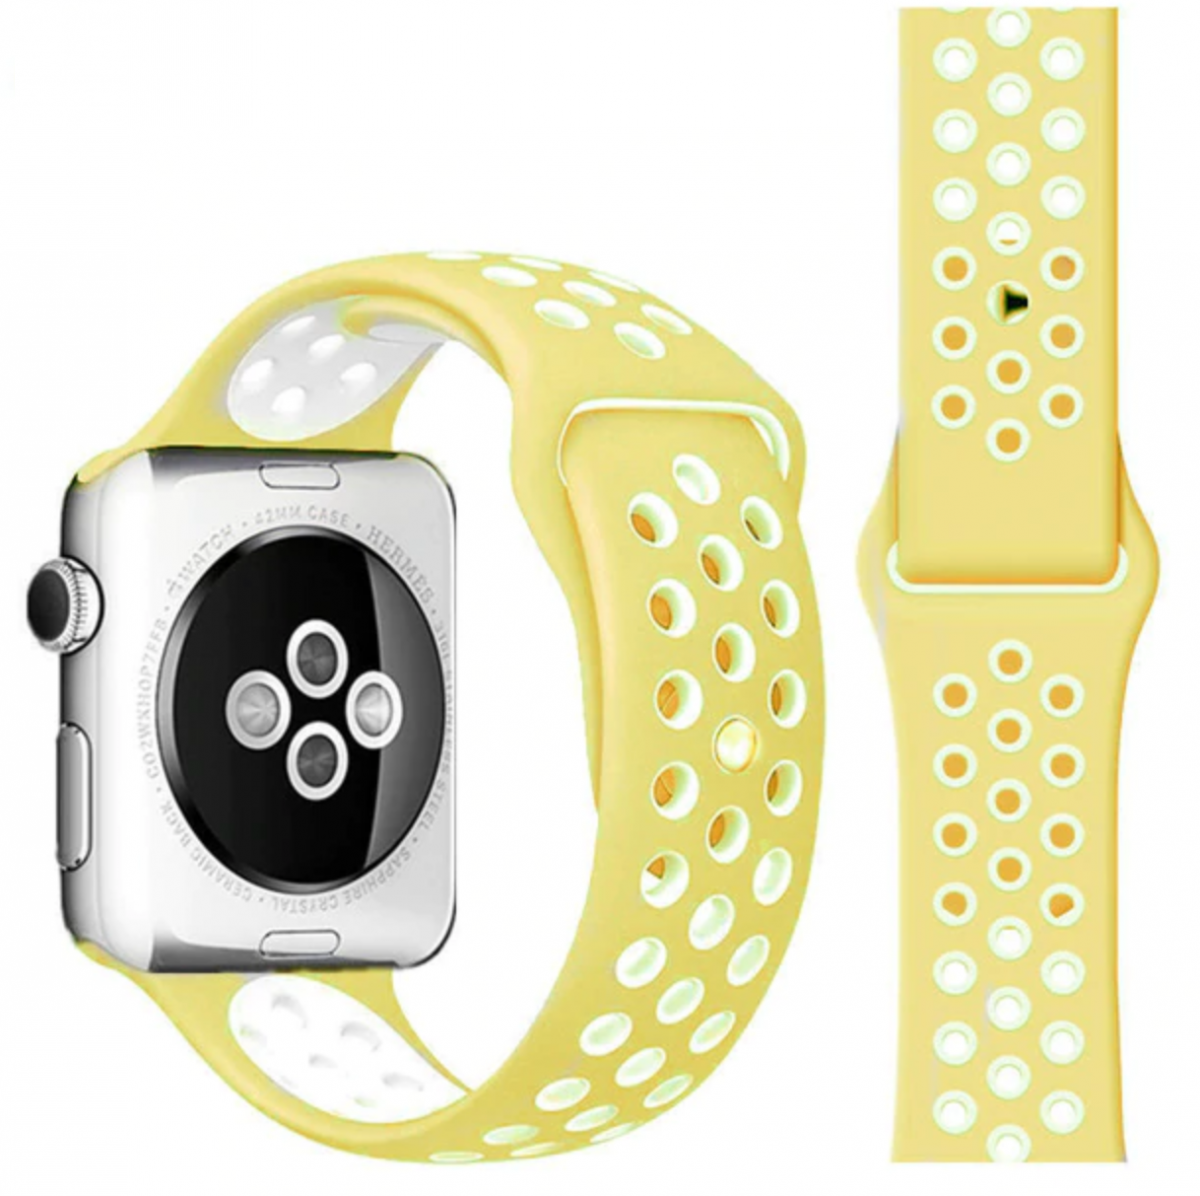 Řemínek SPORT pro Apple Watch Series 1/2/3 (42mm) - Jemně žlutý/Bílý